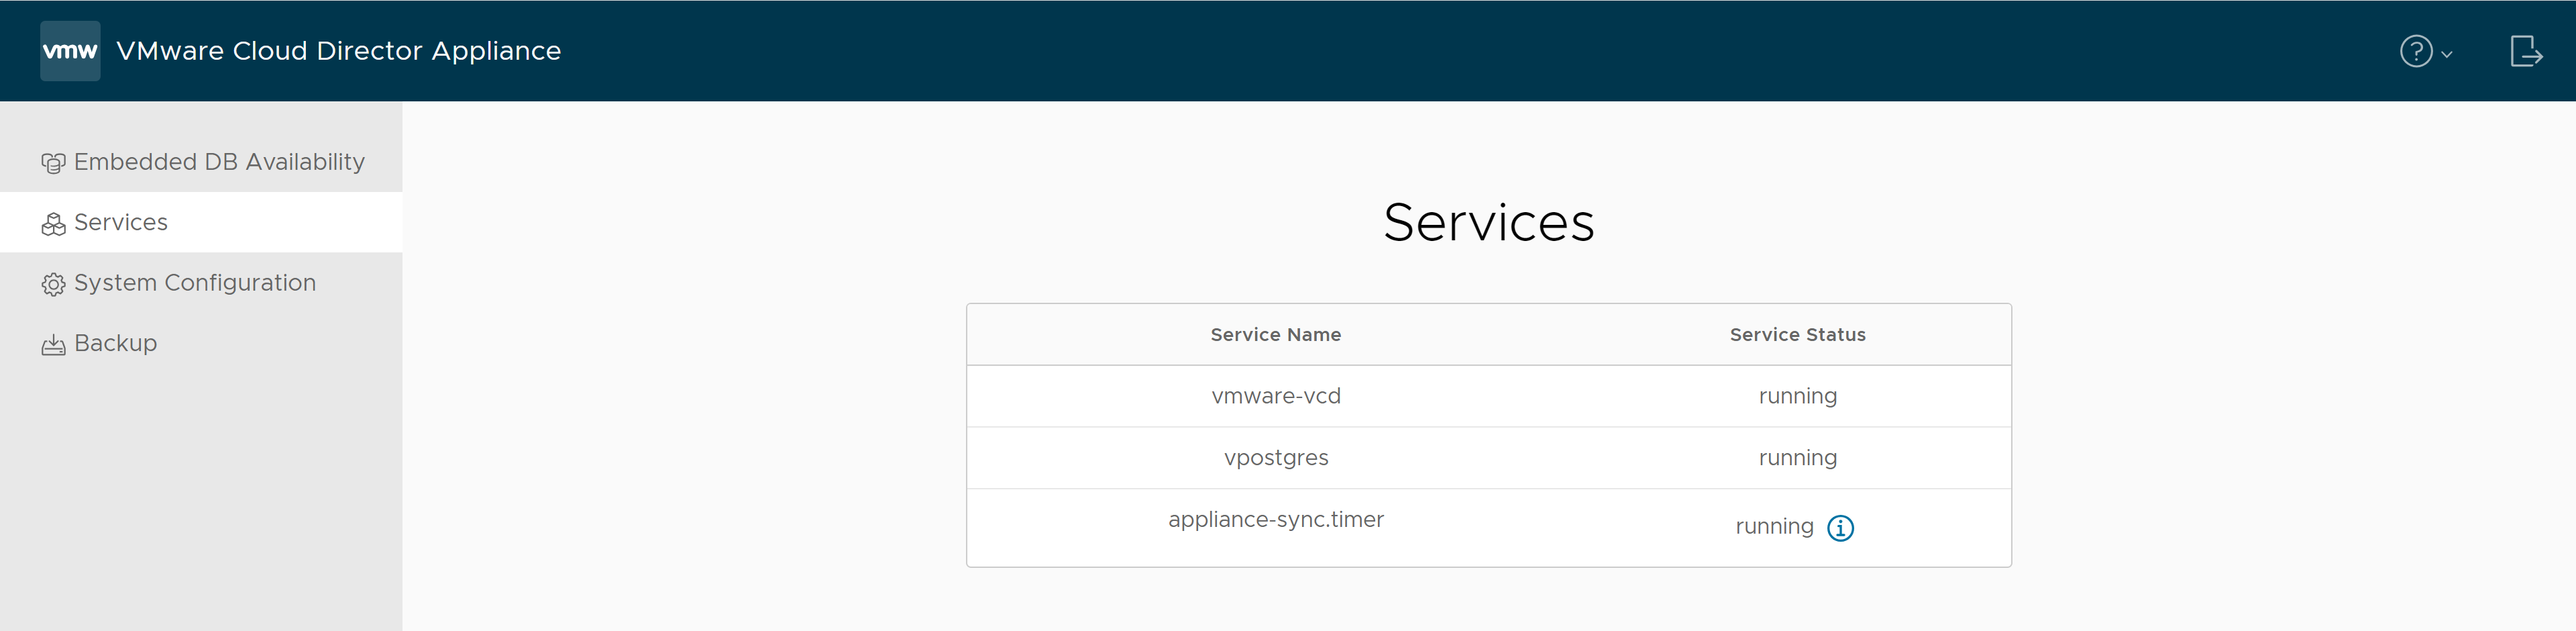 Nella scheda Servizi dell'interfaccia utente di gestione dell'appliance di VMware Cloud Director è possibile individuare i nomi dei servizi e i relativi stati.